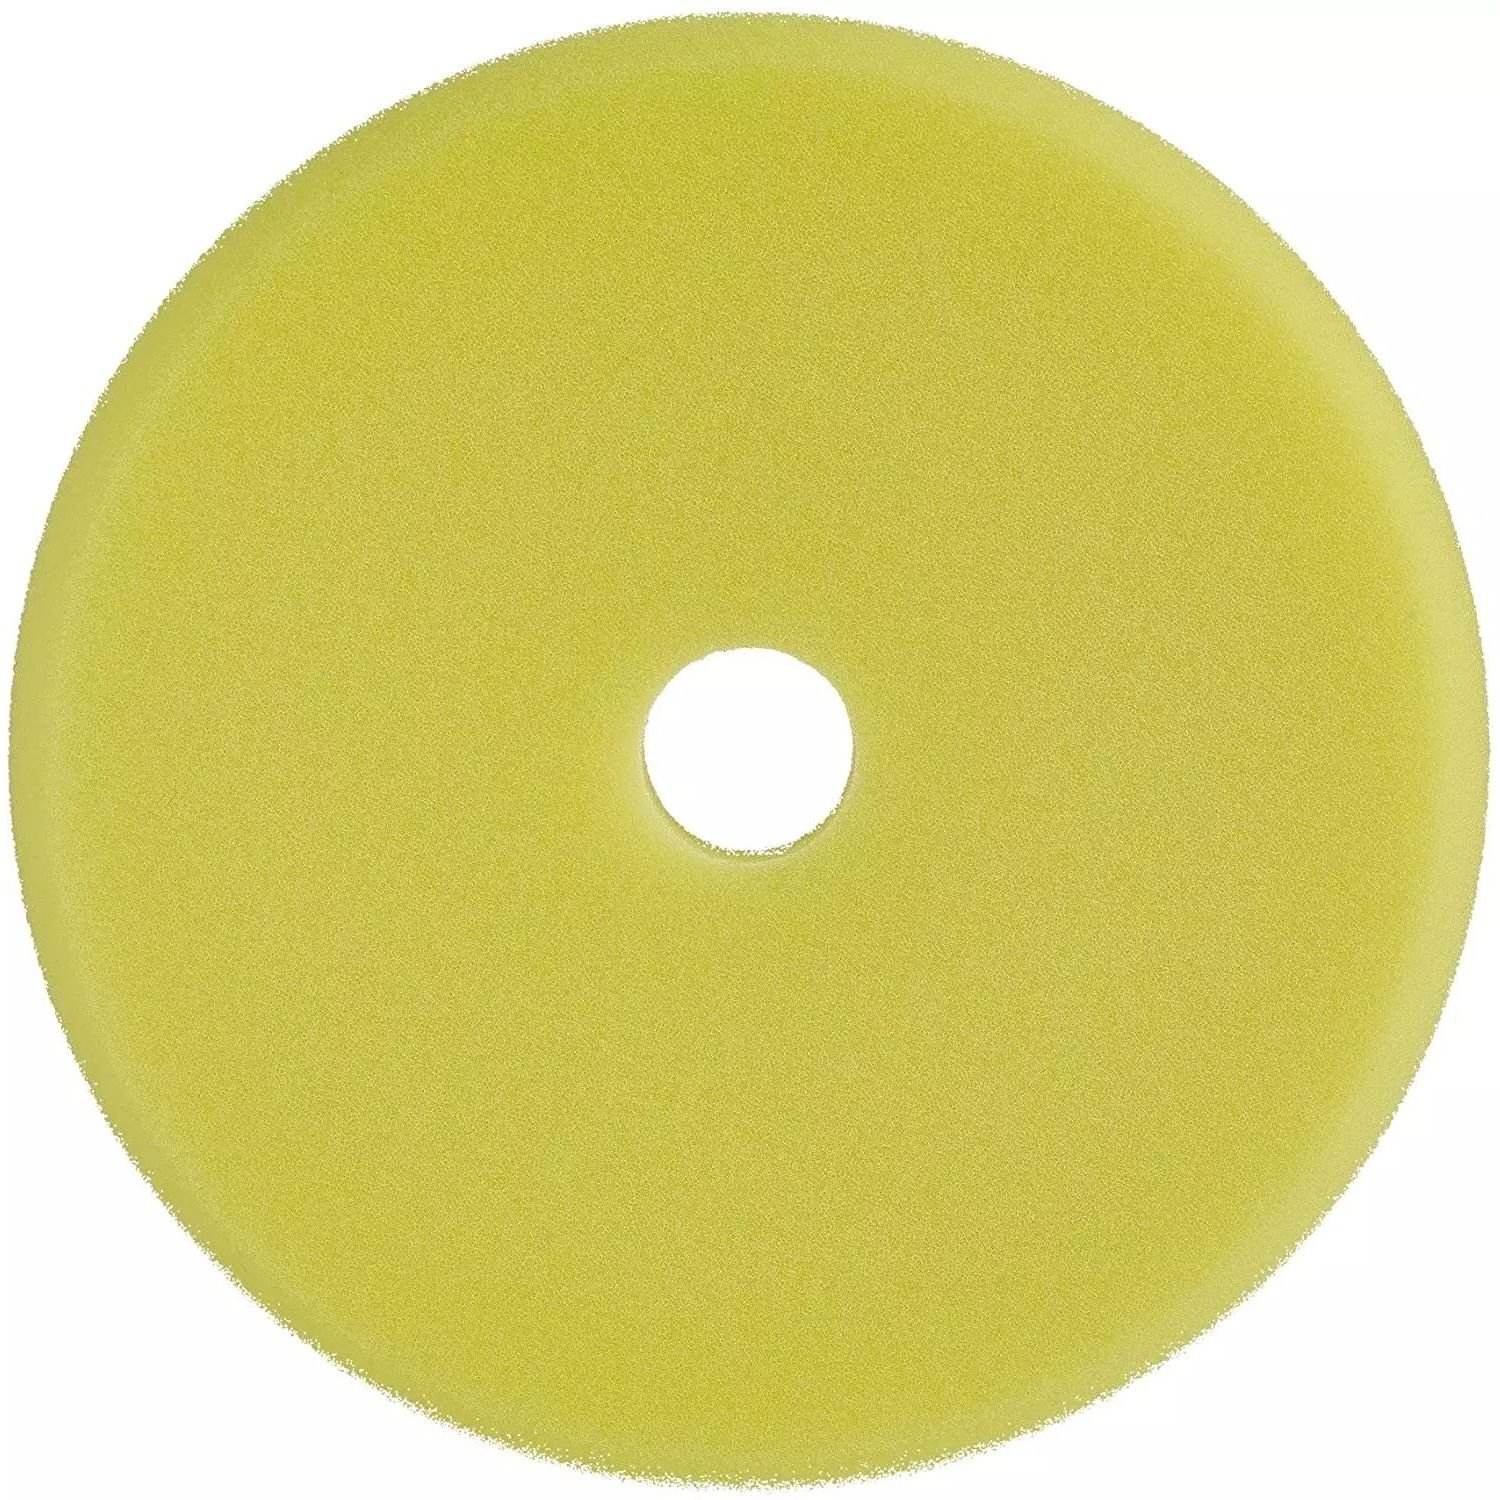 Диск для полировки Sonax Dual Action FinishPad, средней жесткости, желтый, 144 мм - фото 1